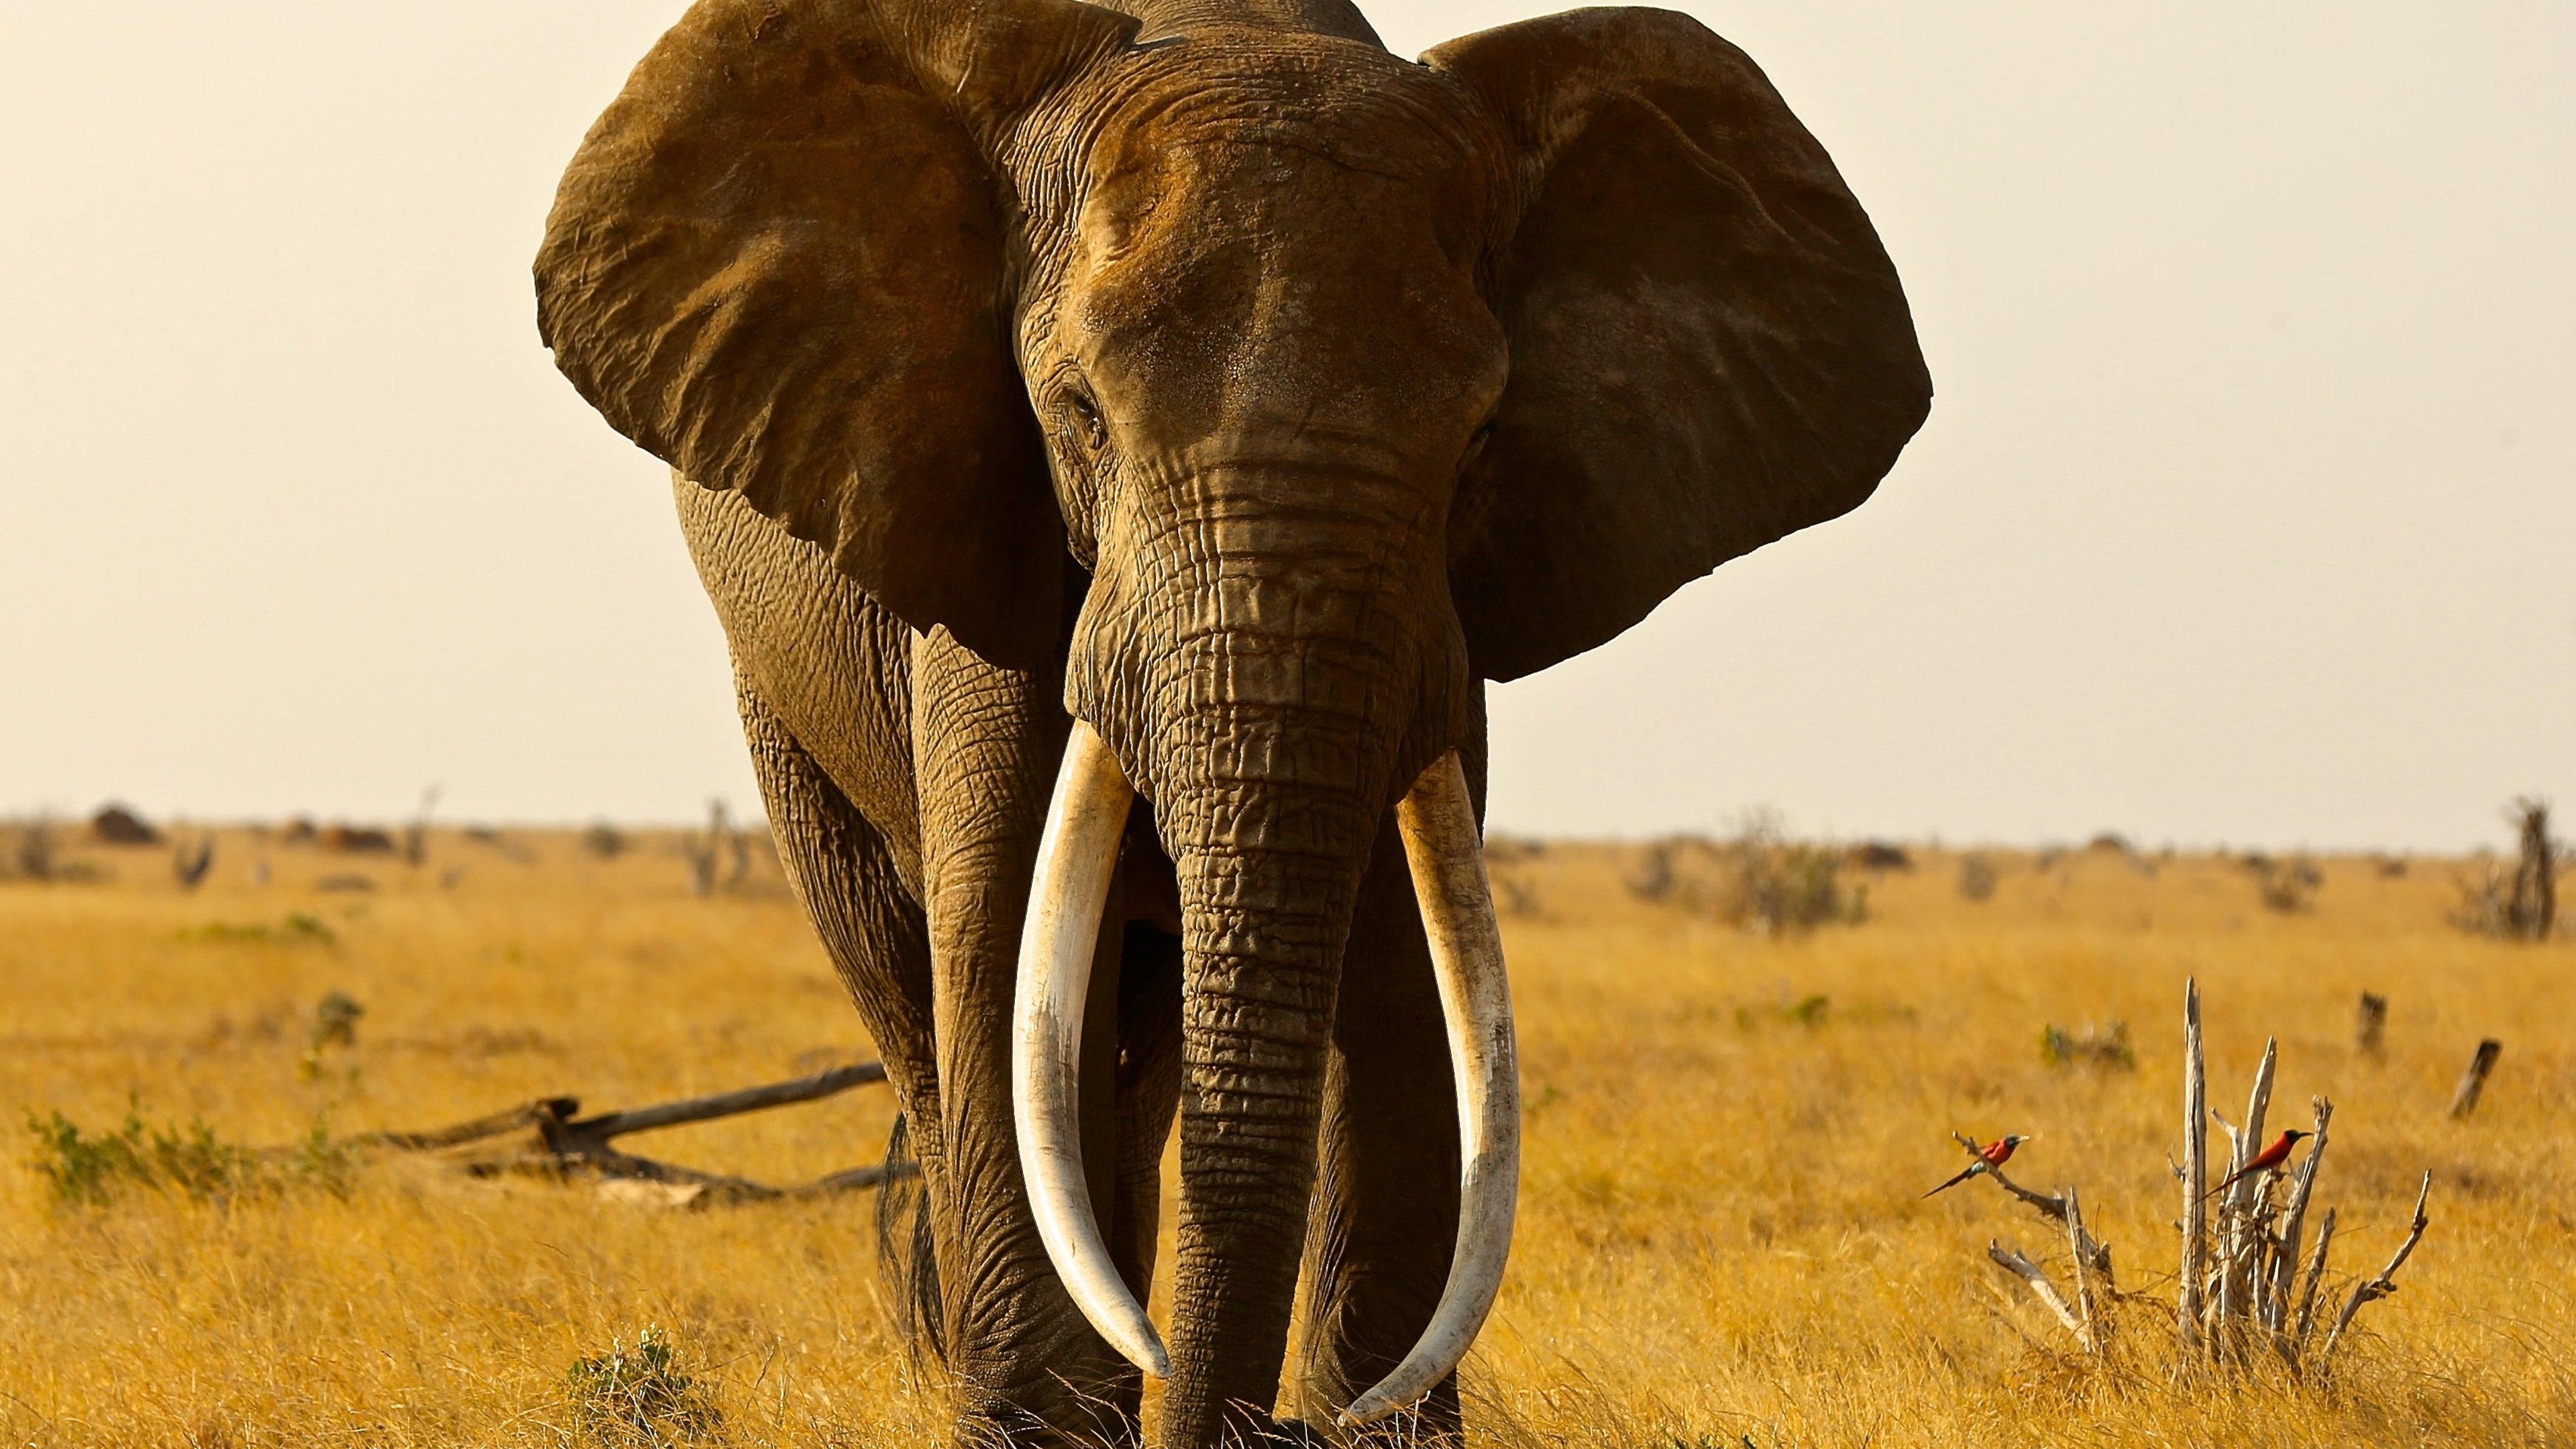 Huge elephant. Слоны в природе. Слоны в пустыне. Слон фото. Саванновый Африканский слон.